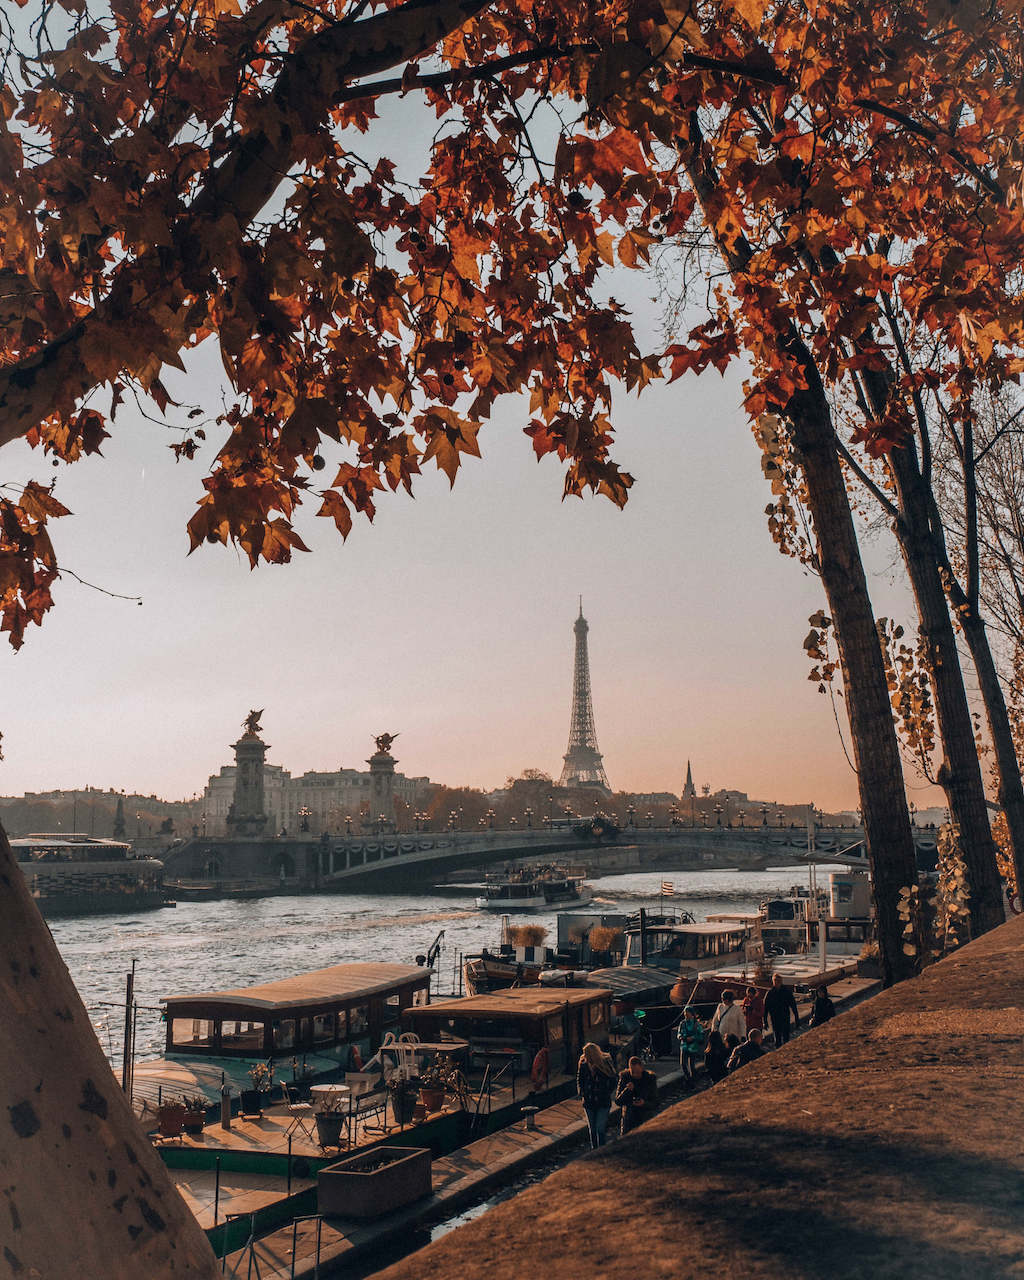 La tour Eiffel et la Seine avec des couleurs automnales - Paris - France